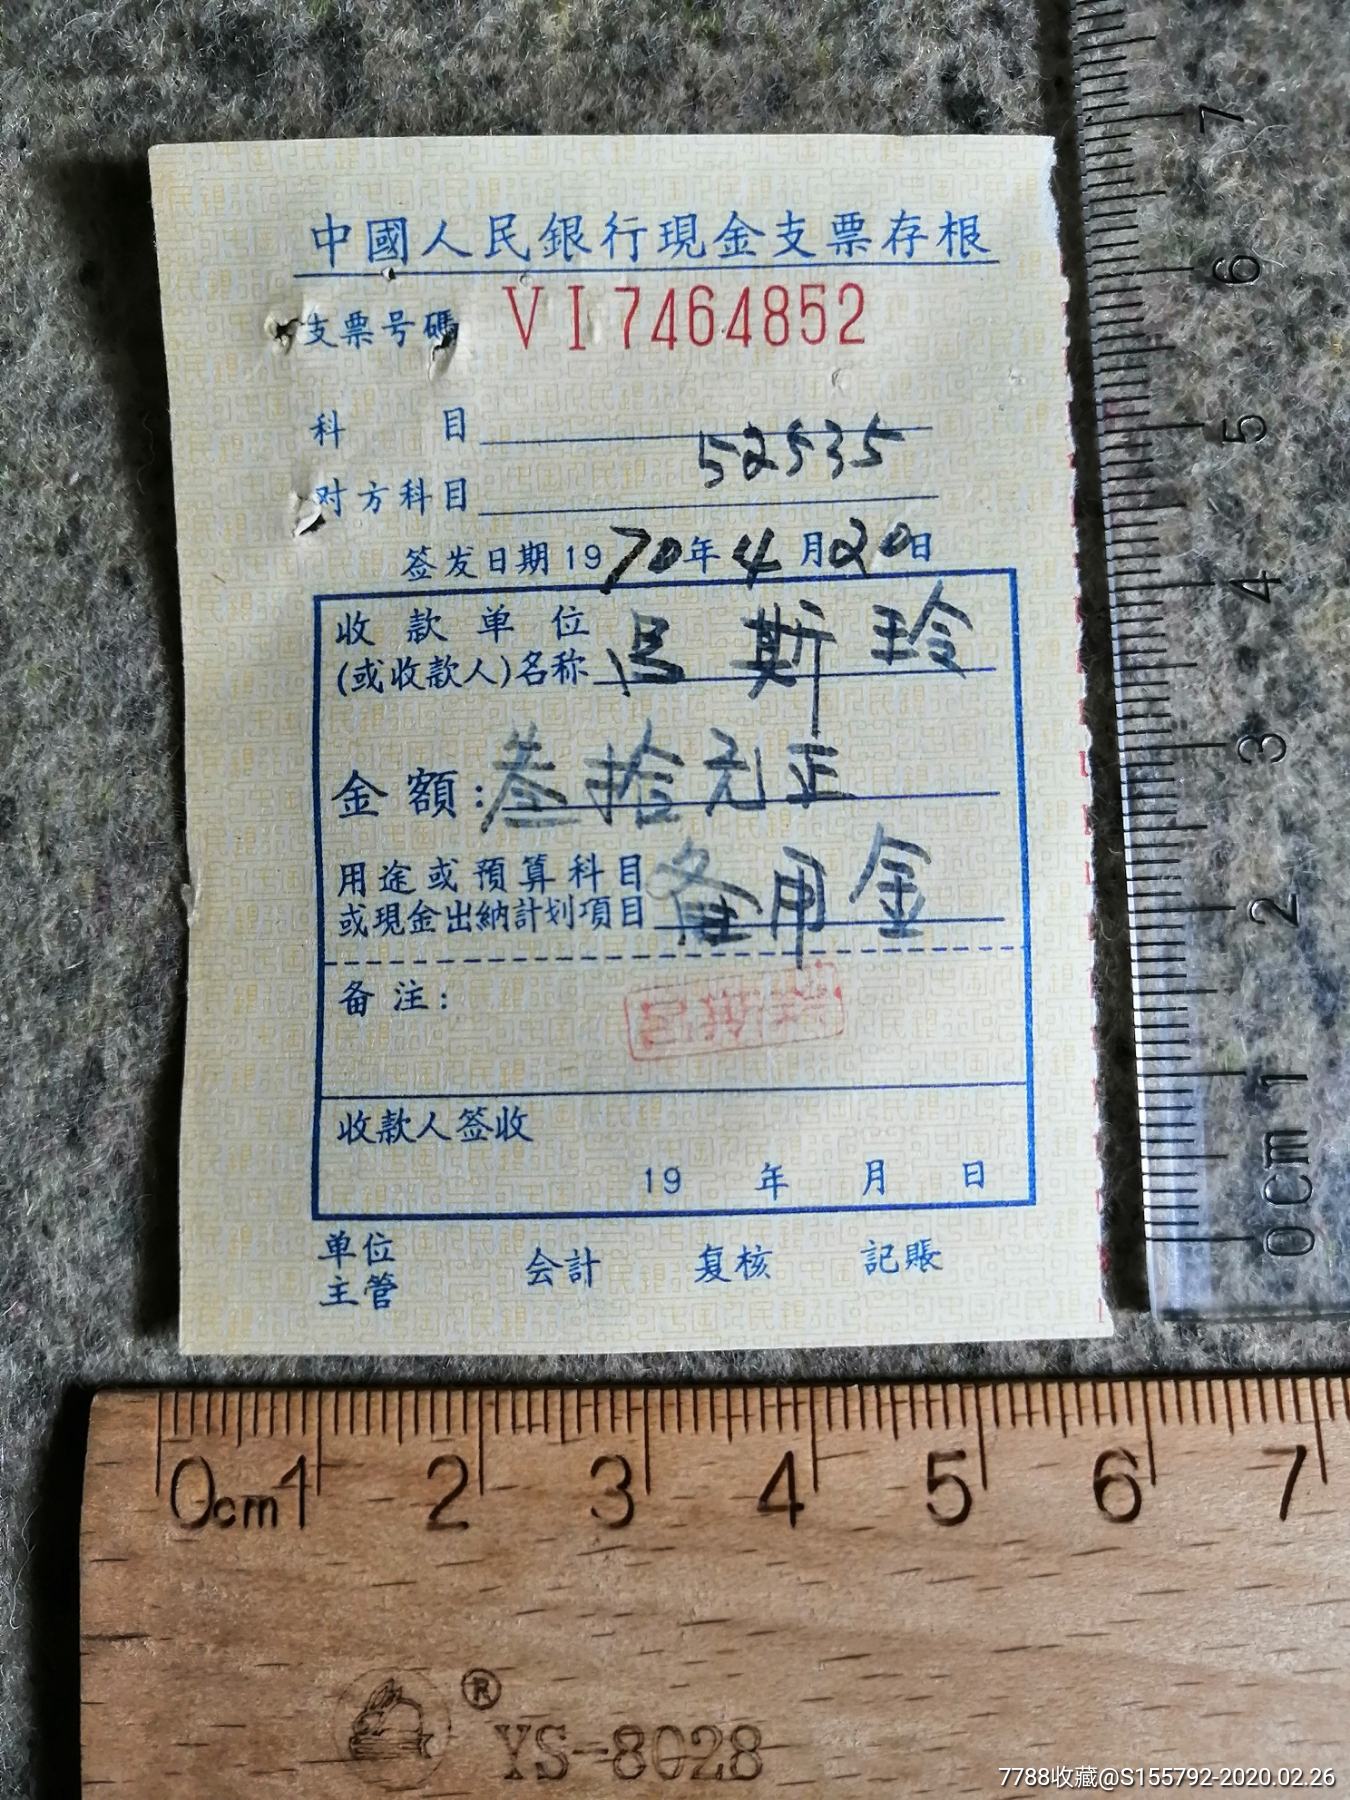 中国人民银行现金支票存根1970年